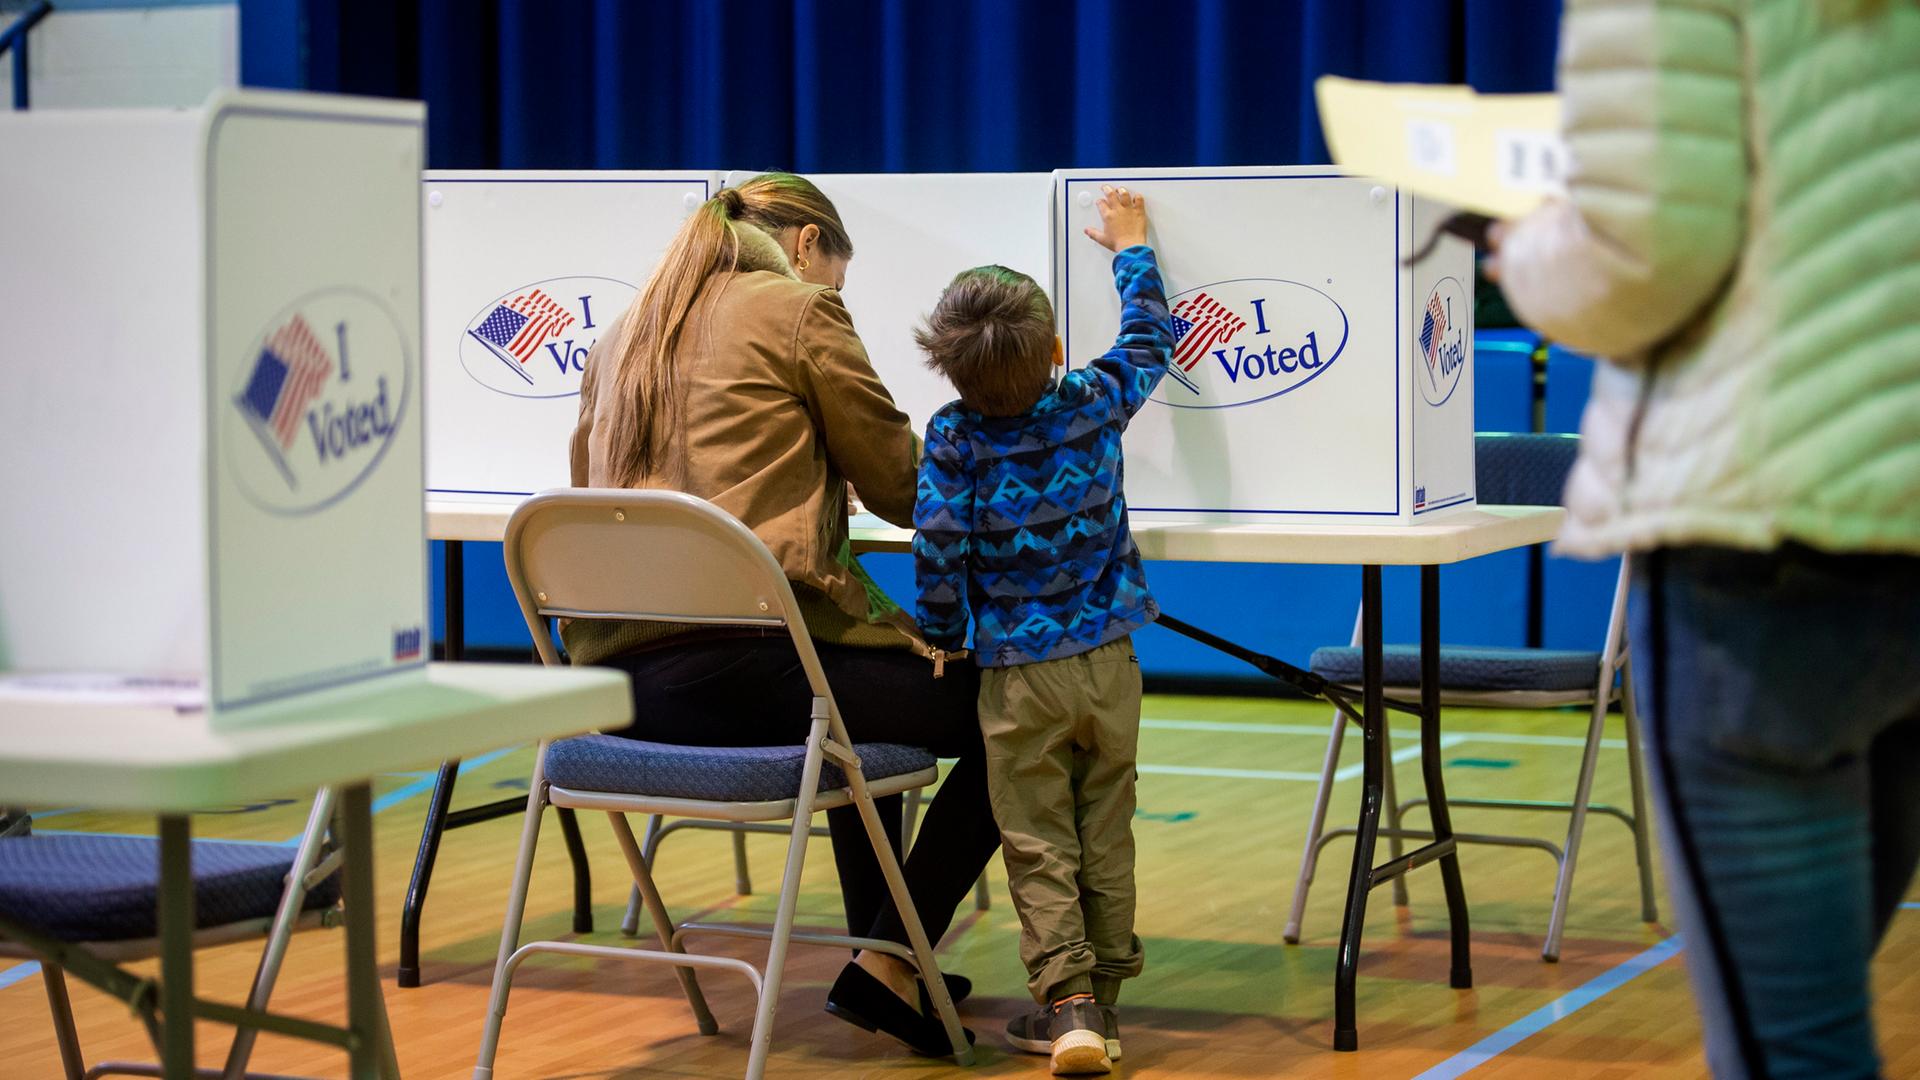 Eine Frau wählt in den USA. Sie ist von hinten in der Wahl-Kabine zu sehen, neben ihr ein kleines Kind. 